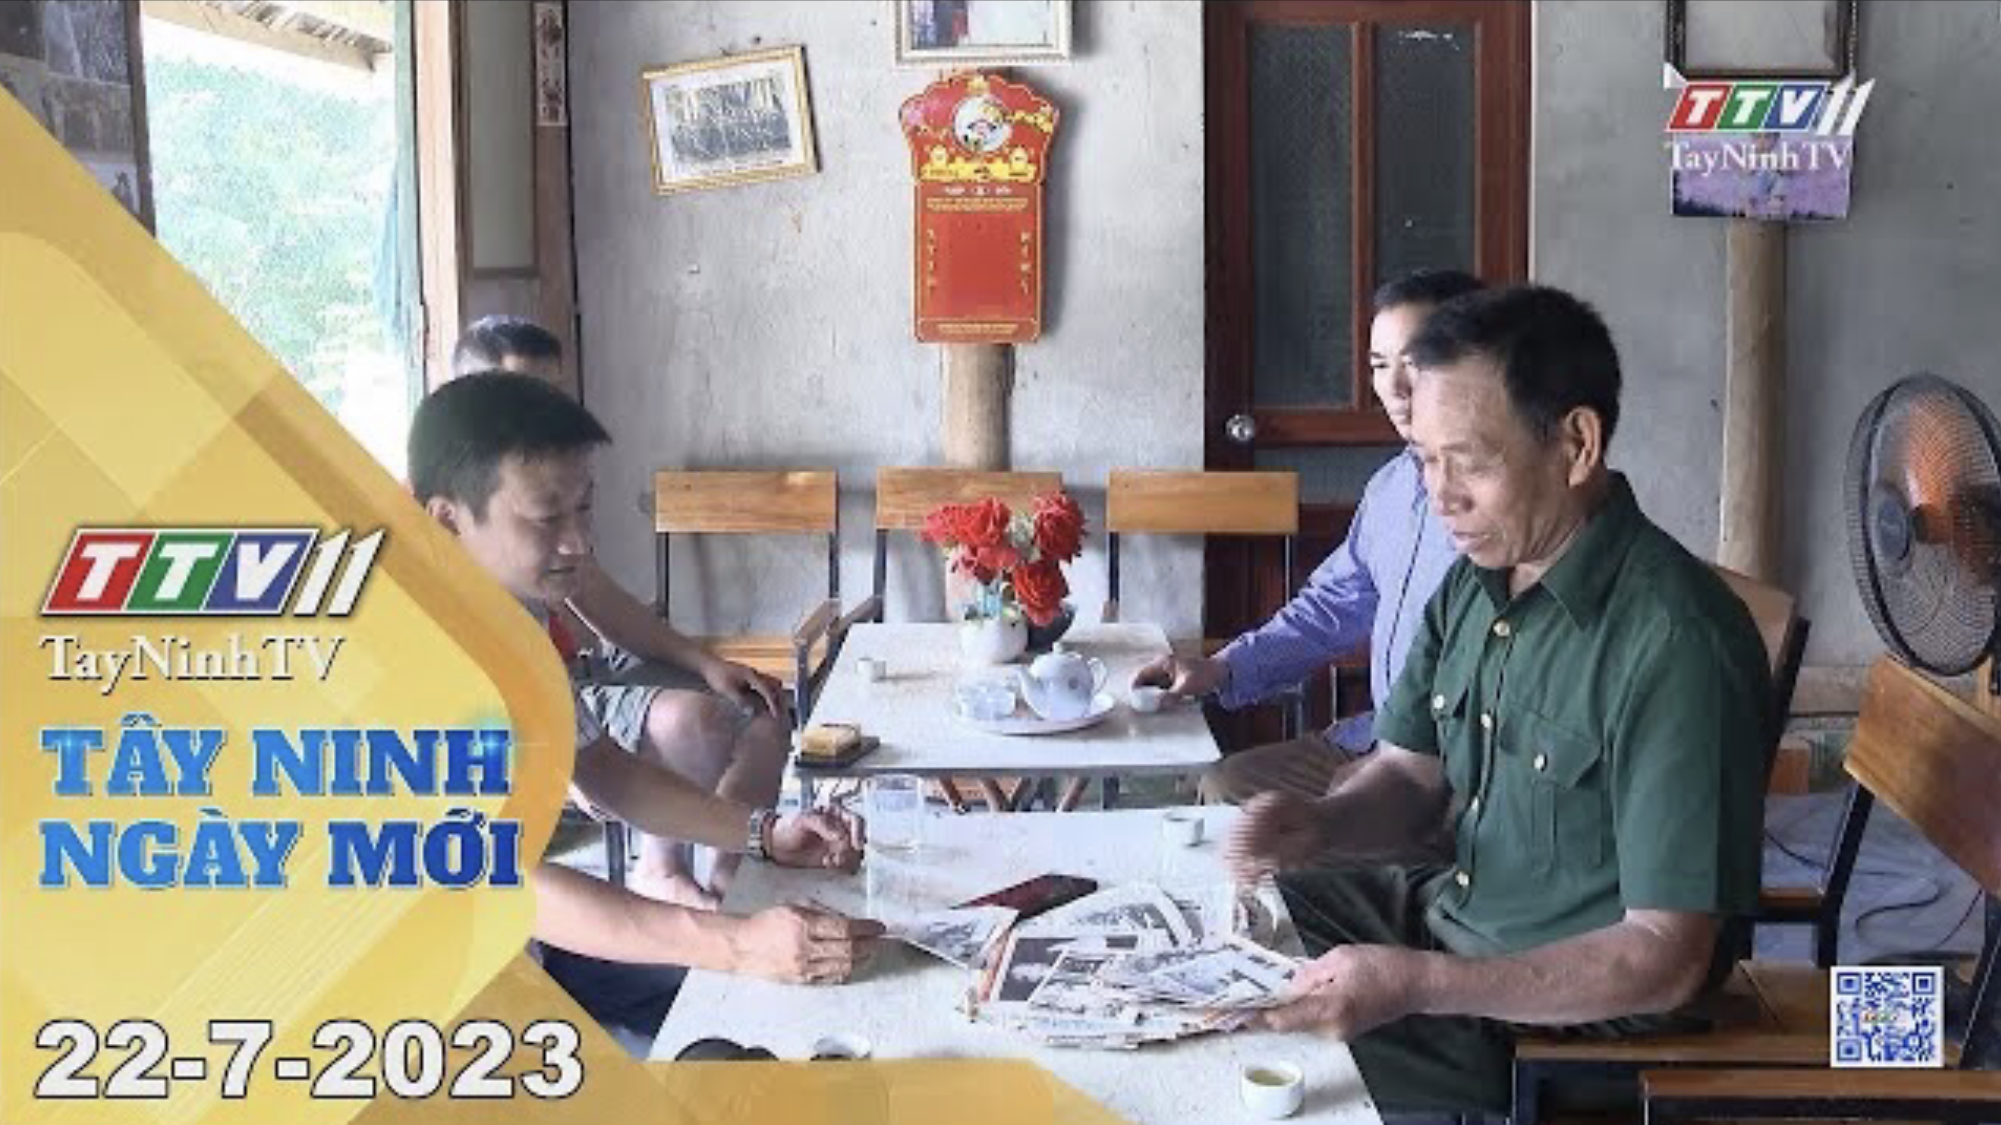 Tây Ninh ngày mới 22-7-2023 | Tin tức hôm nay | TayNinhTV